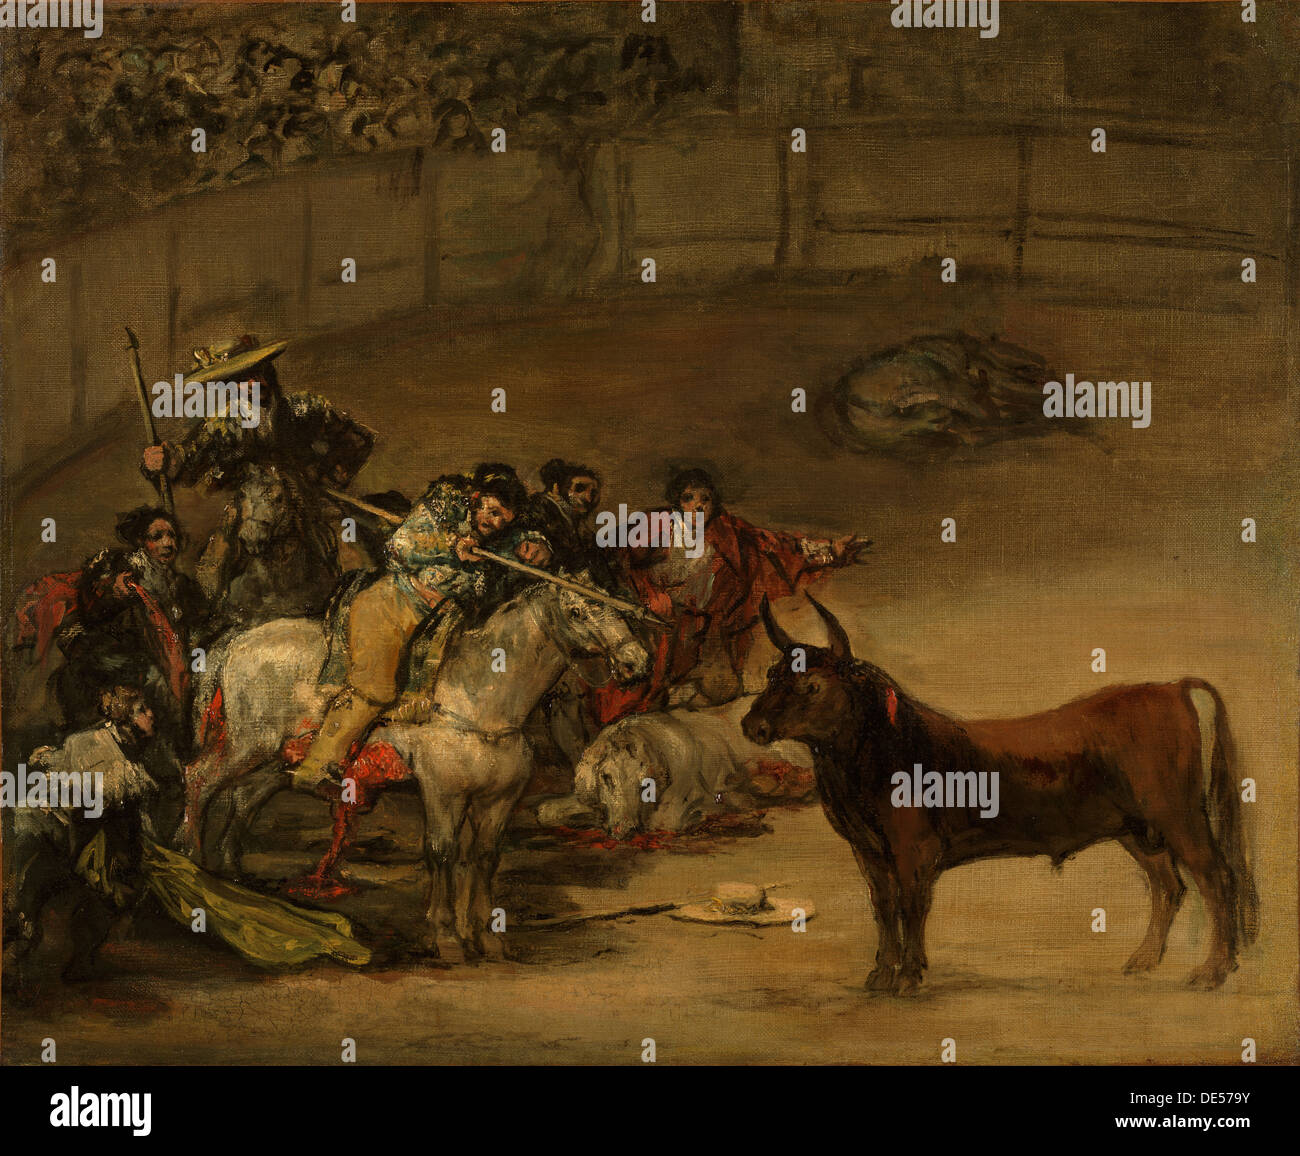 Bullfight, Suerte de Varas; Francisco José de Goya y Lucientes (Francisco de Goya), Spanish, 1746 - 1828; 1824; Oil on canvas Stock Photo